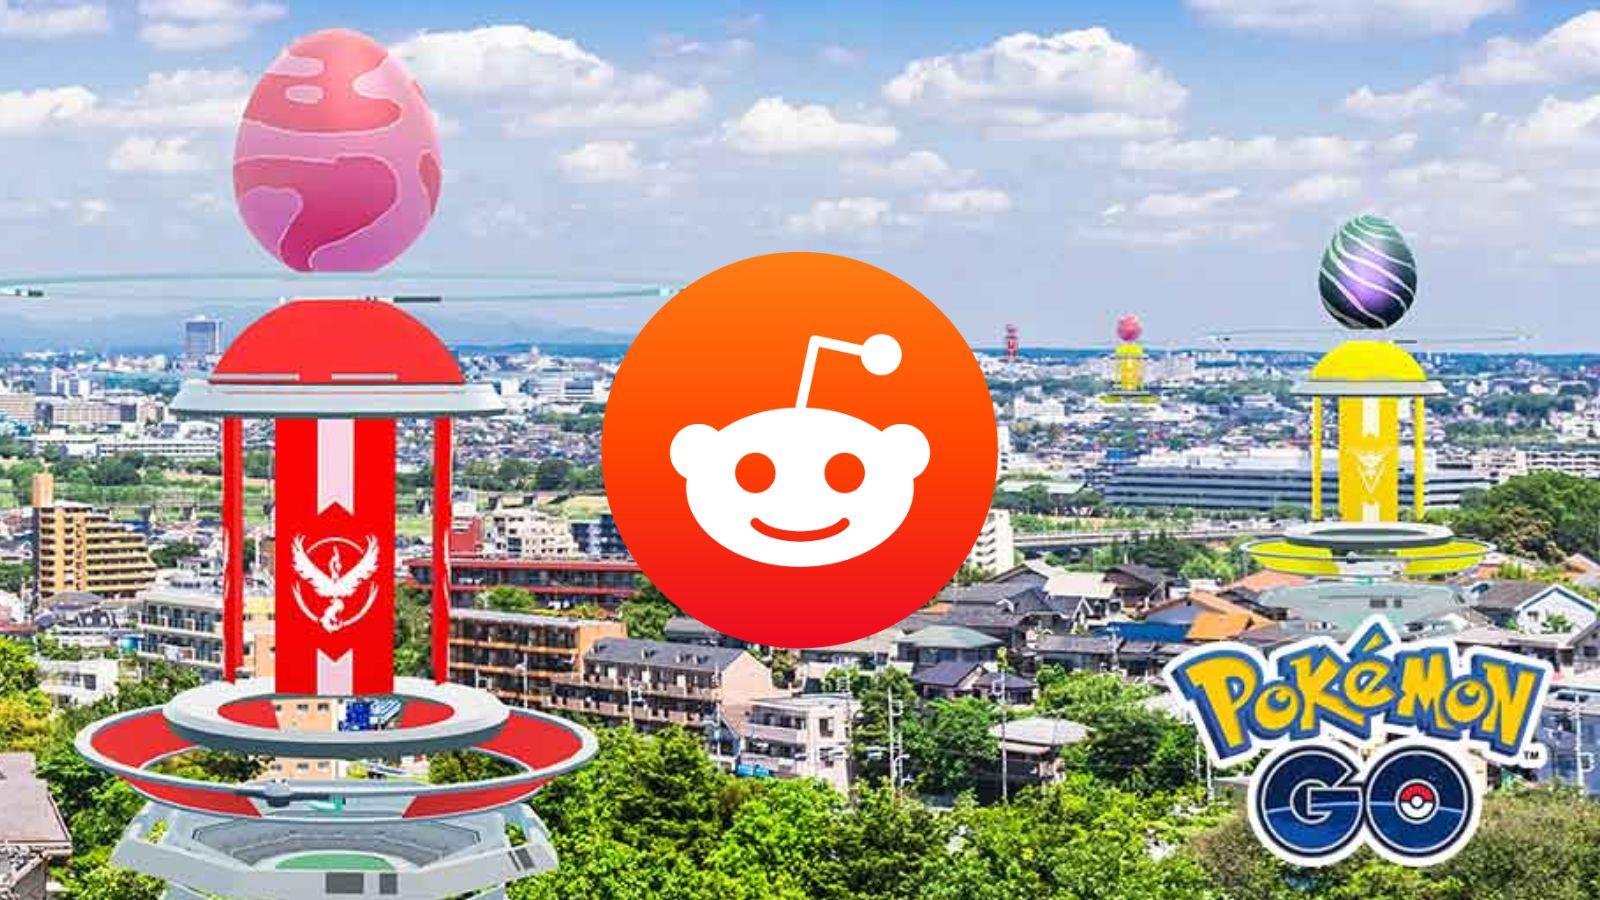 Reddit logo over a Pokemon Go gym